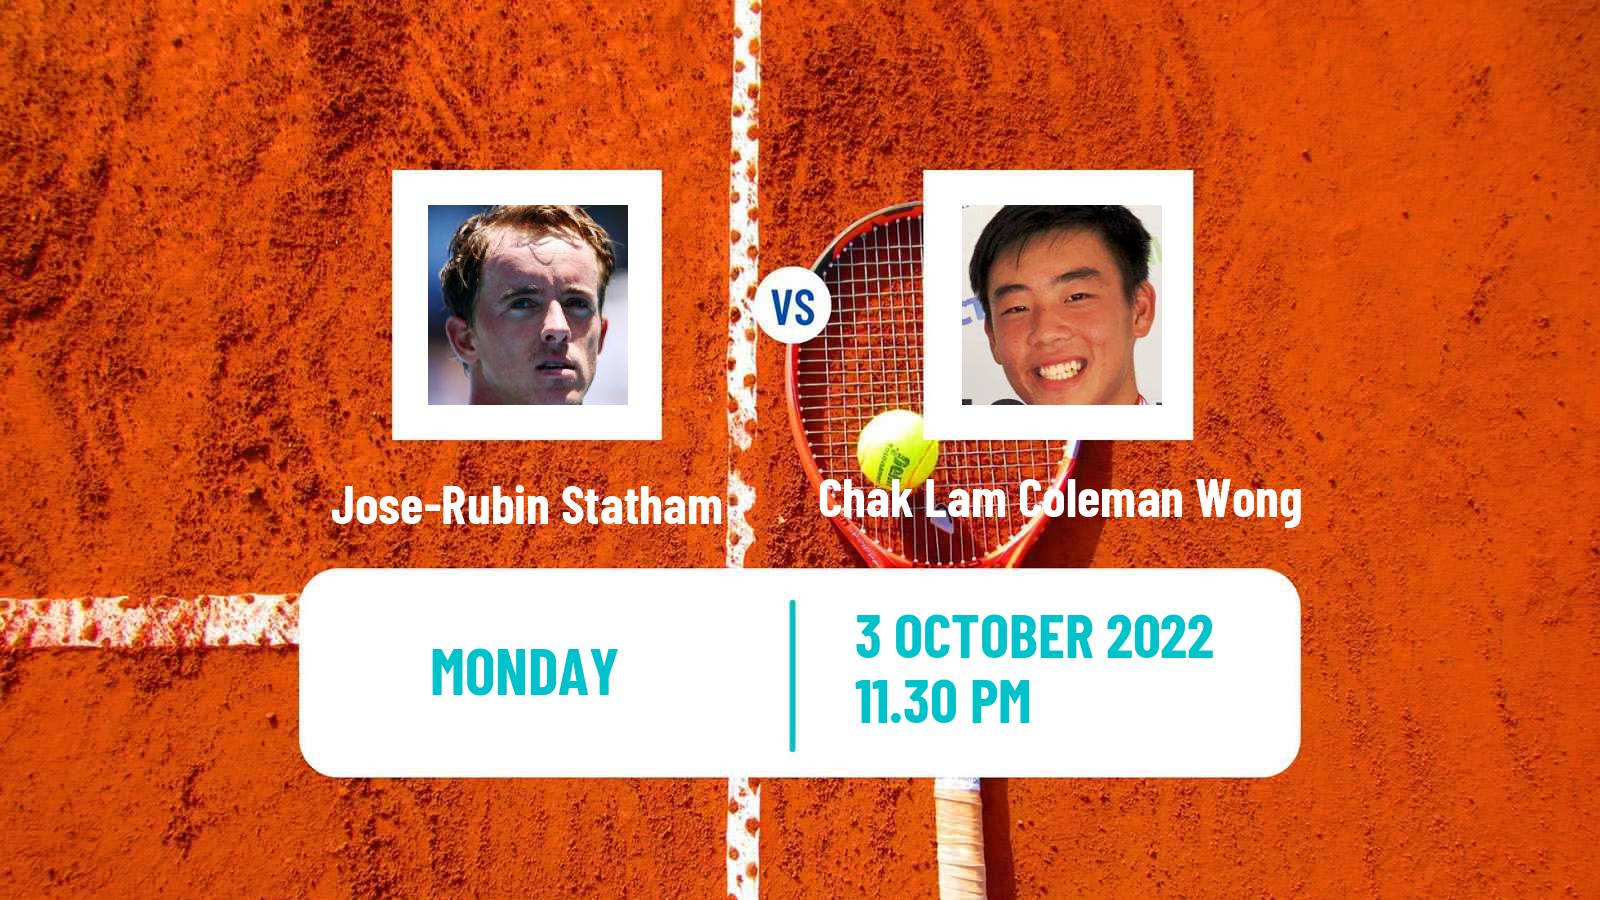 Tennis ITF Tournaments Jose-Rubin Statham - Chak Lam Coleman Wong